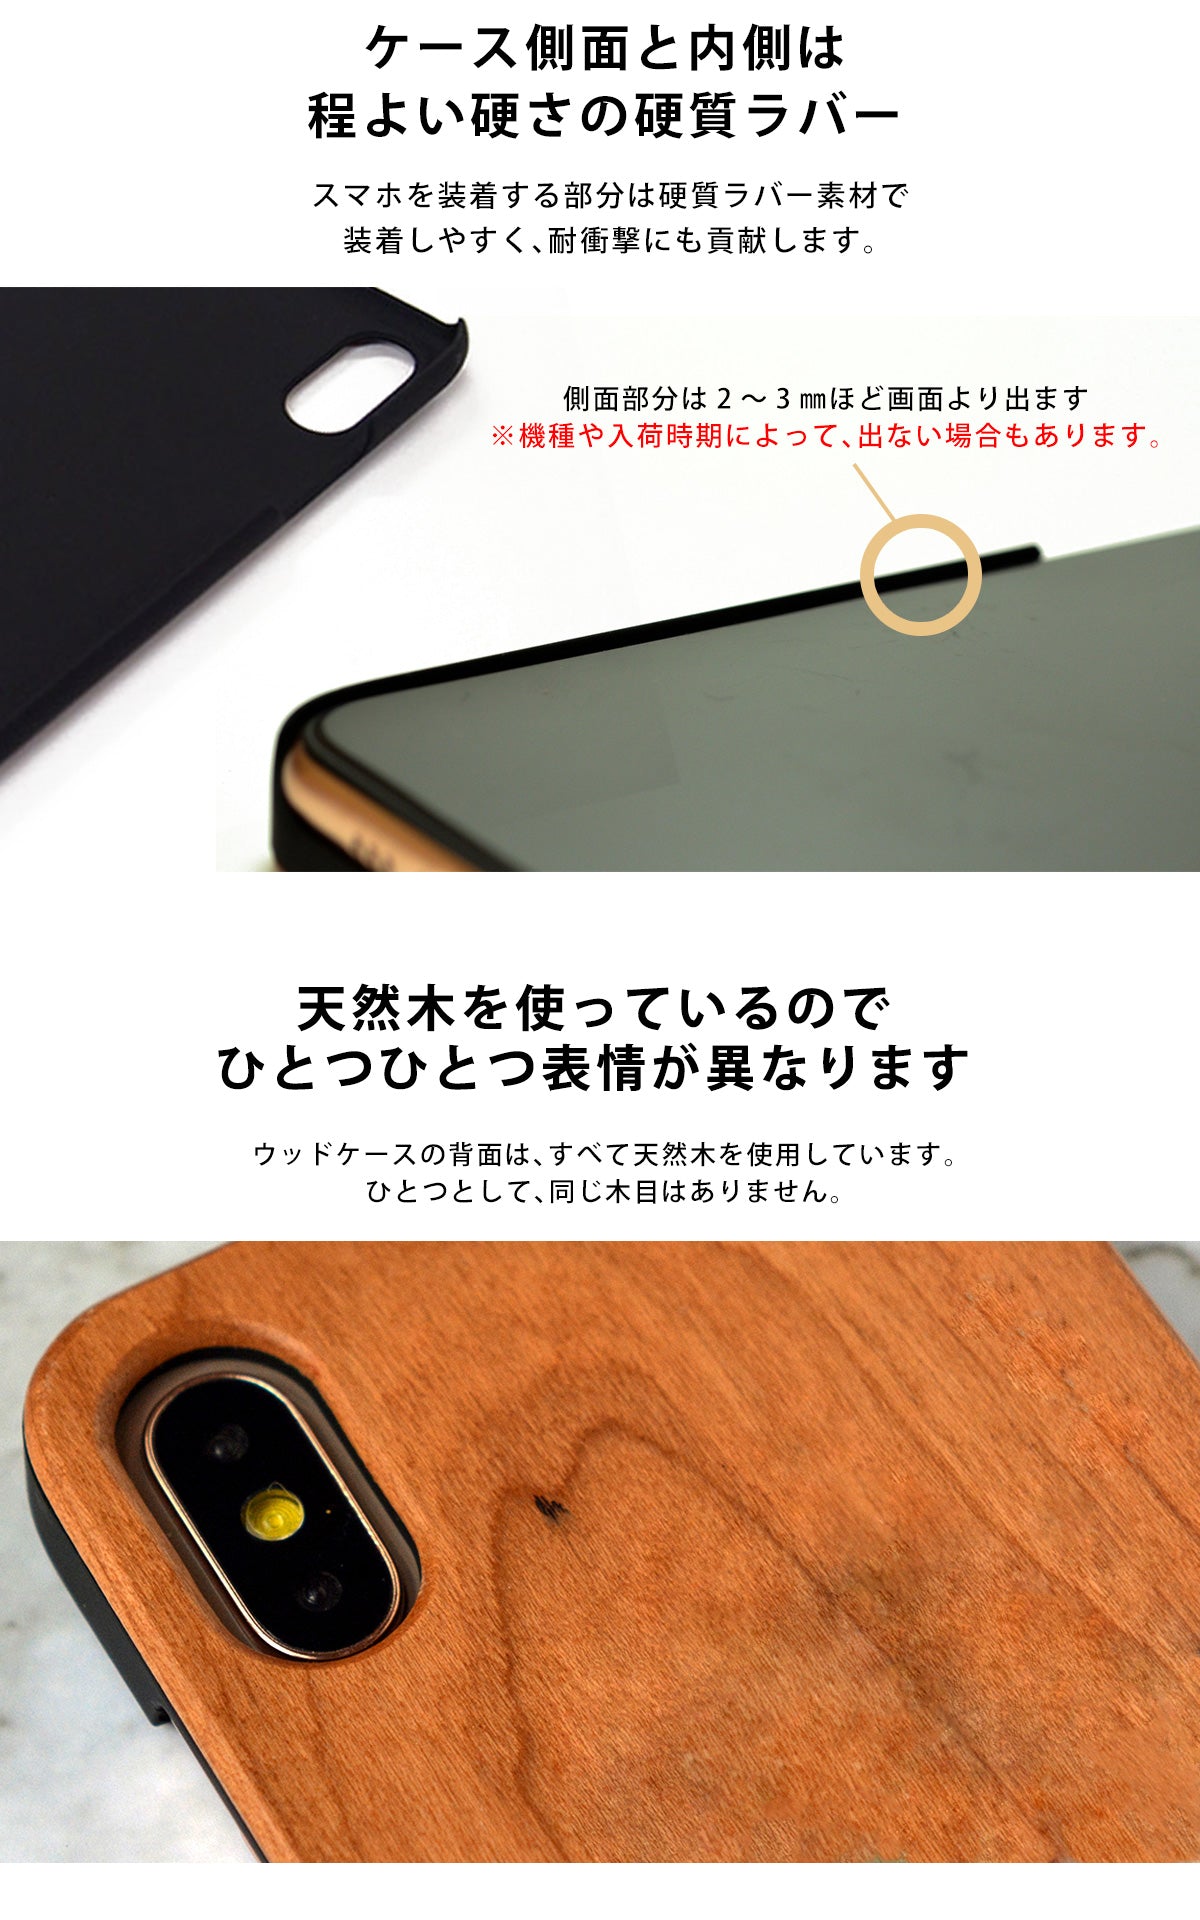 ウッド 木製 竹製 天然木 iPhone Xperia ケース tr1064